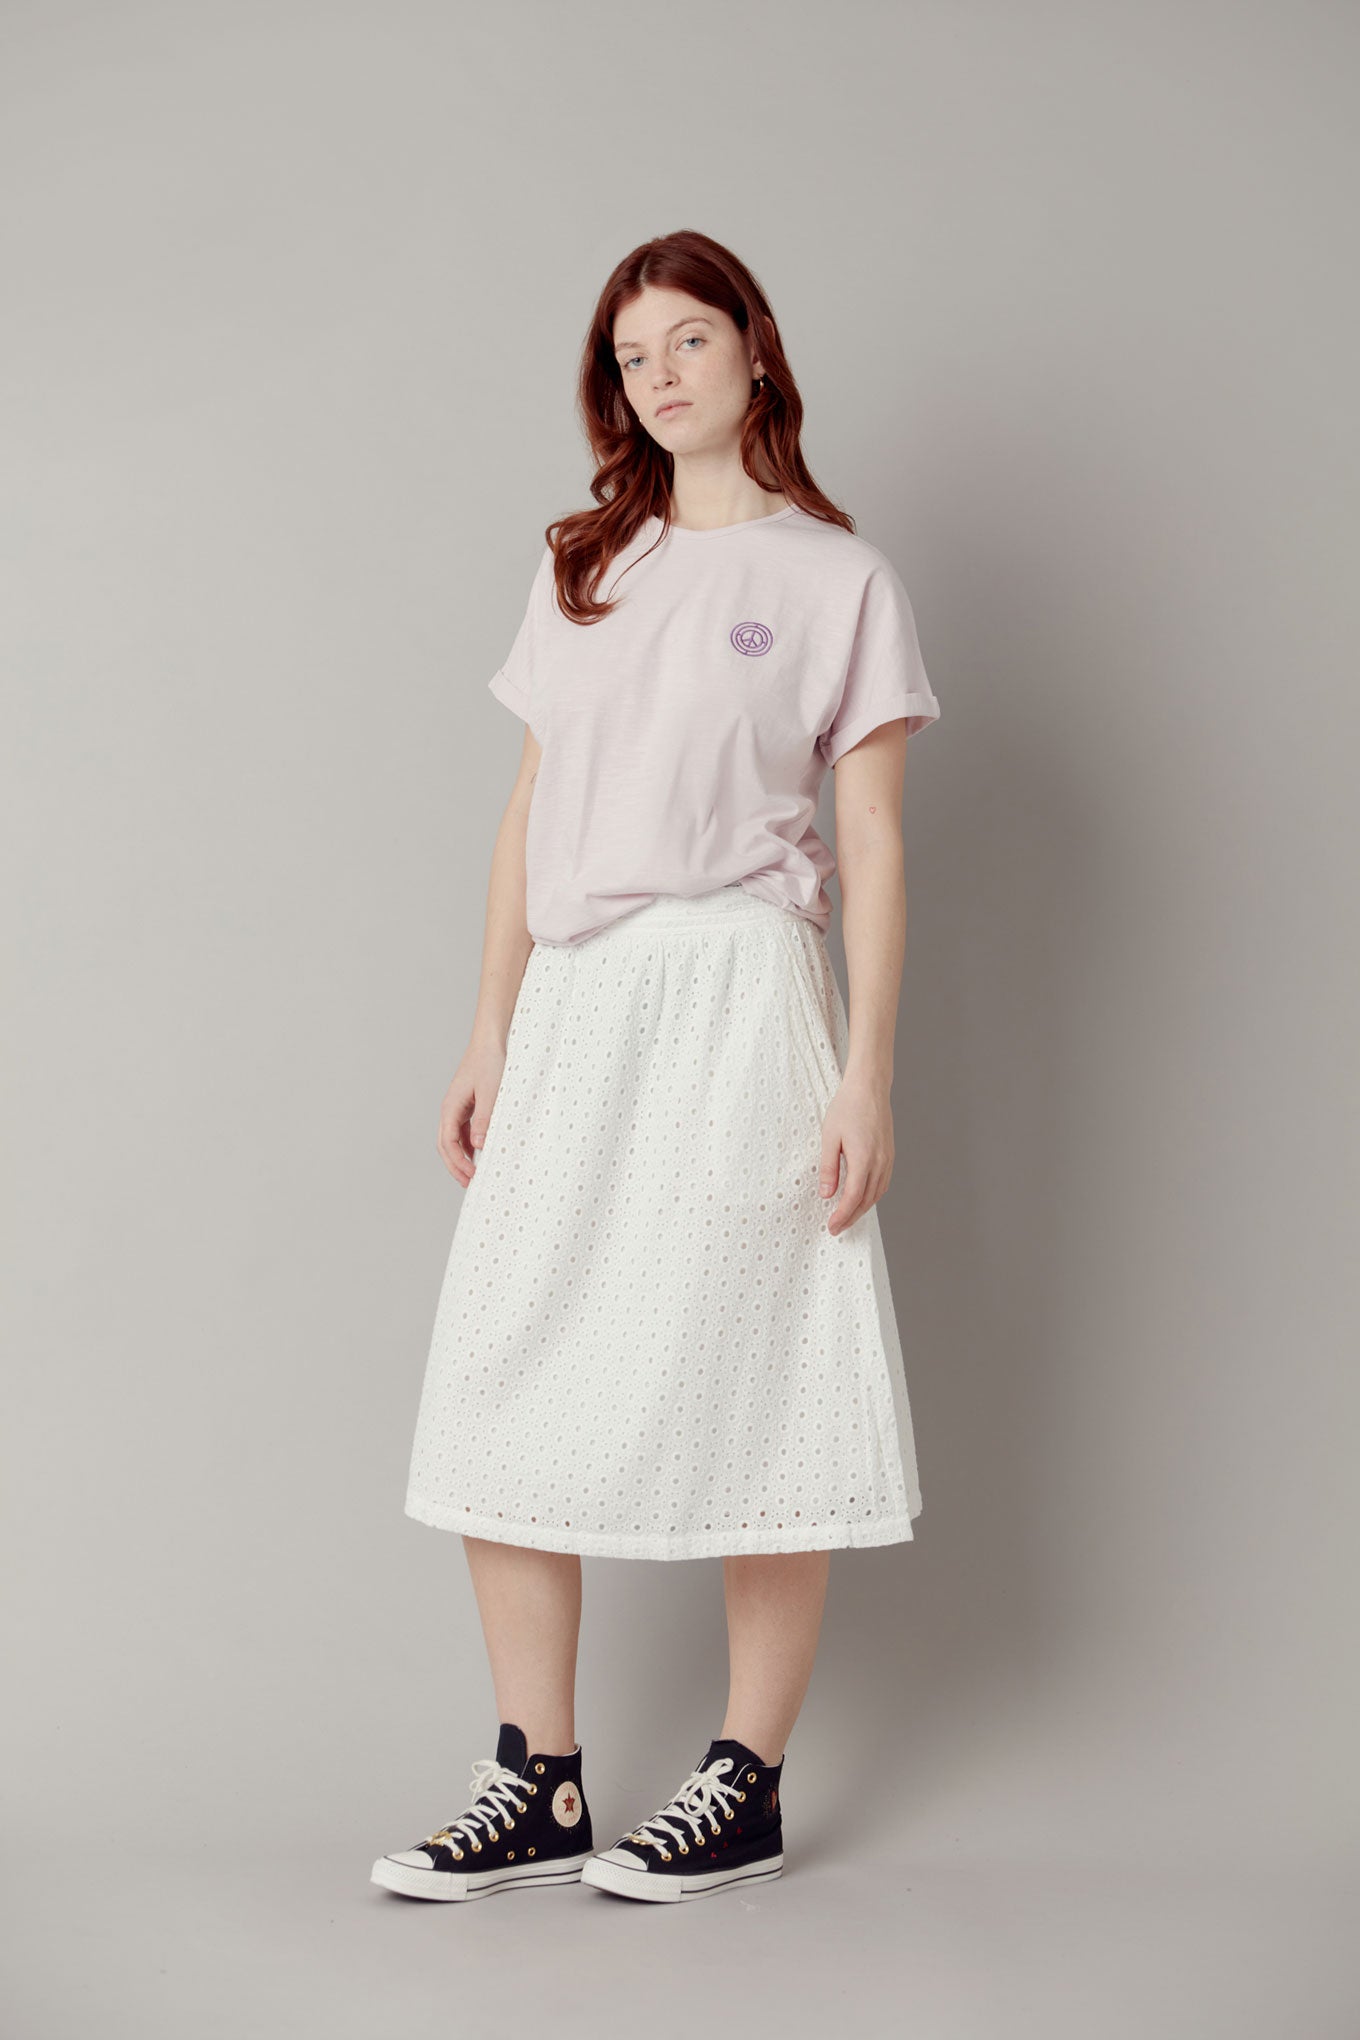 NAMI Organic Cotton Midi Skirt - White, SIZE 2 / UK 10 / EUR 38